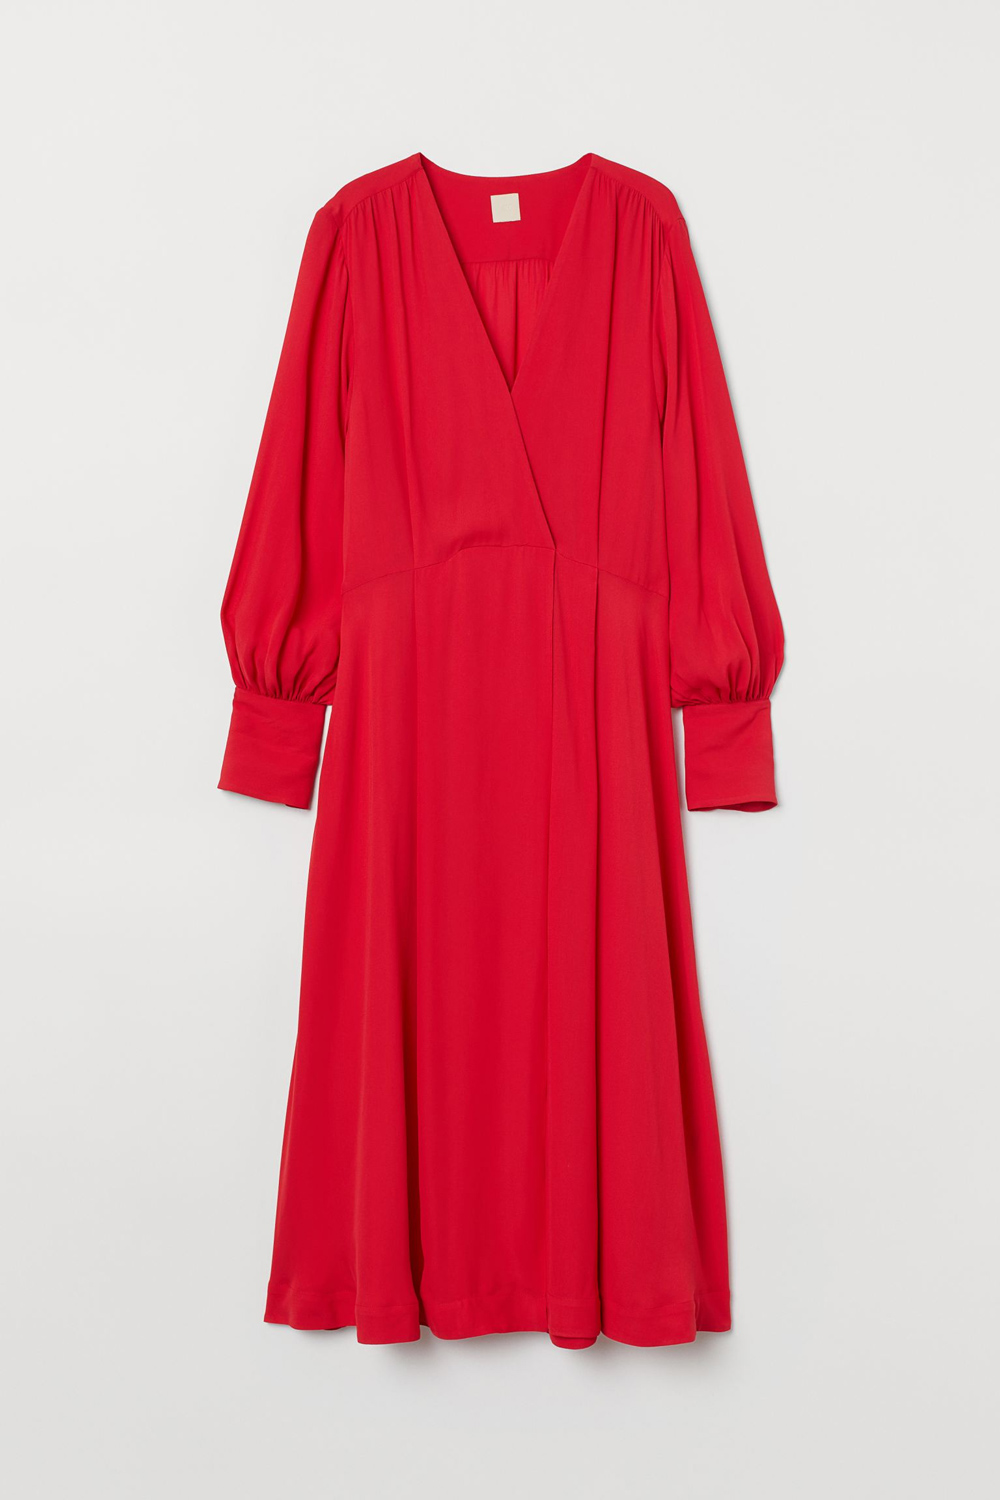 H&M haljine za blagdane i Božić 2020.